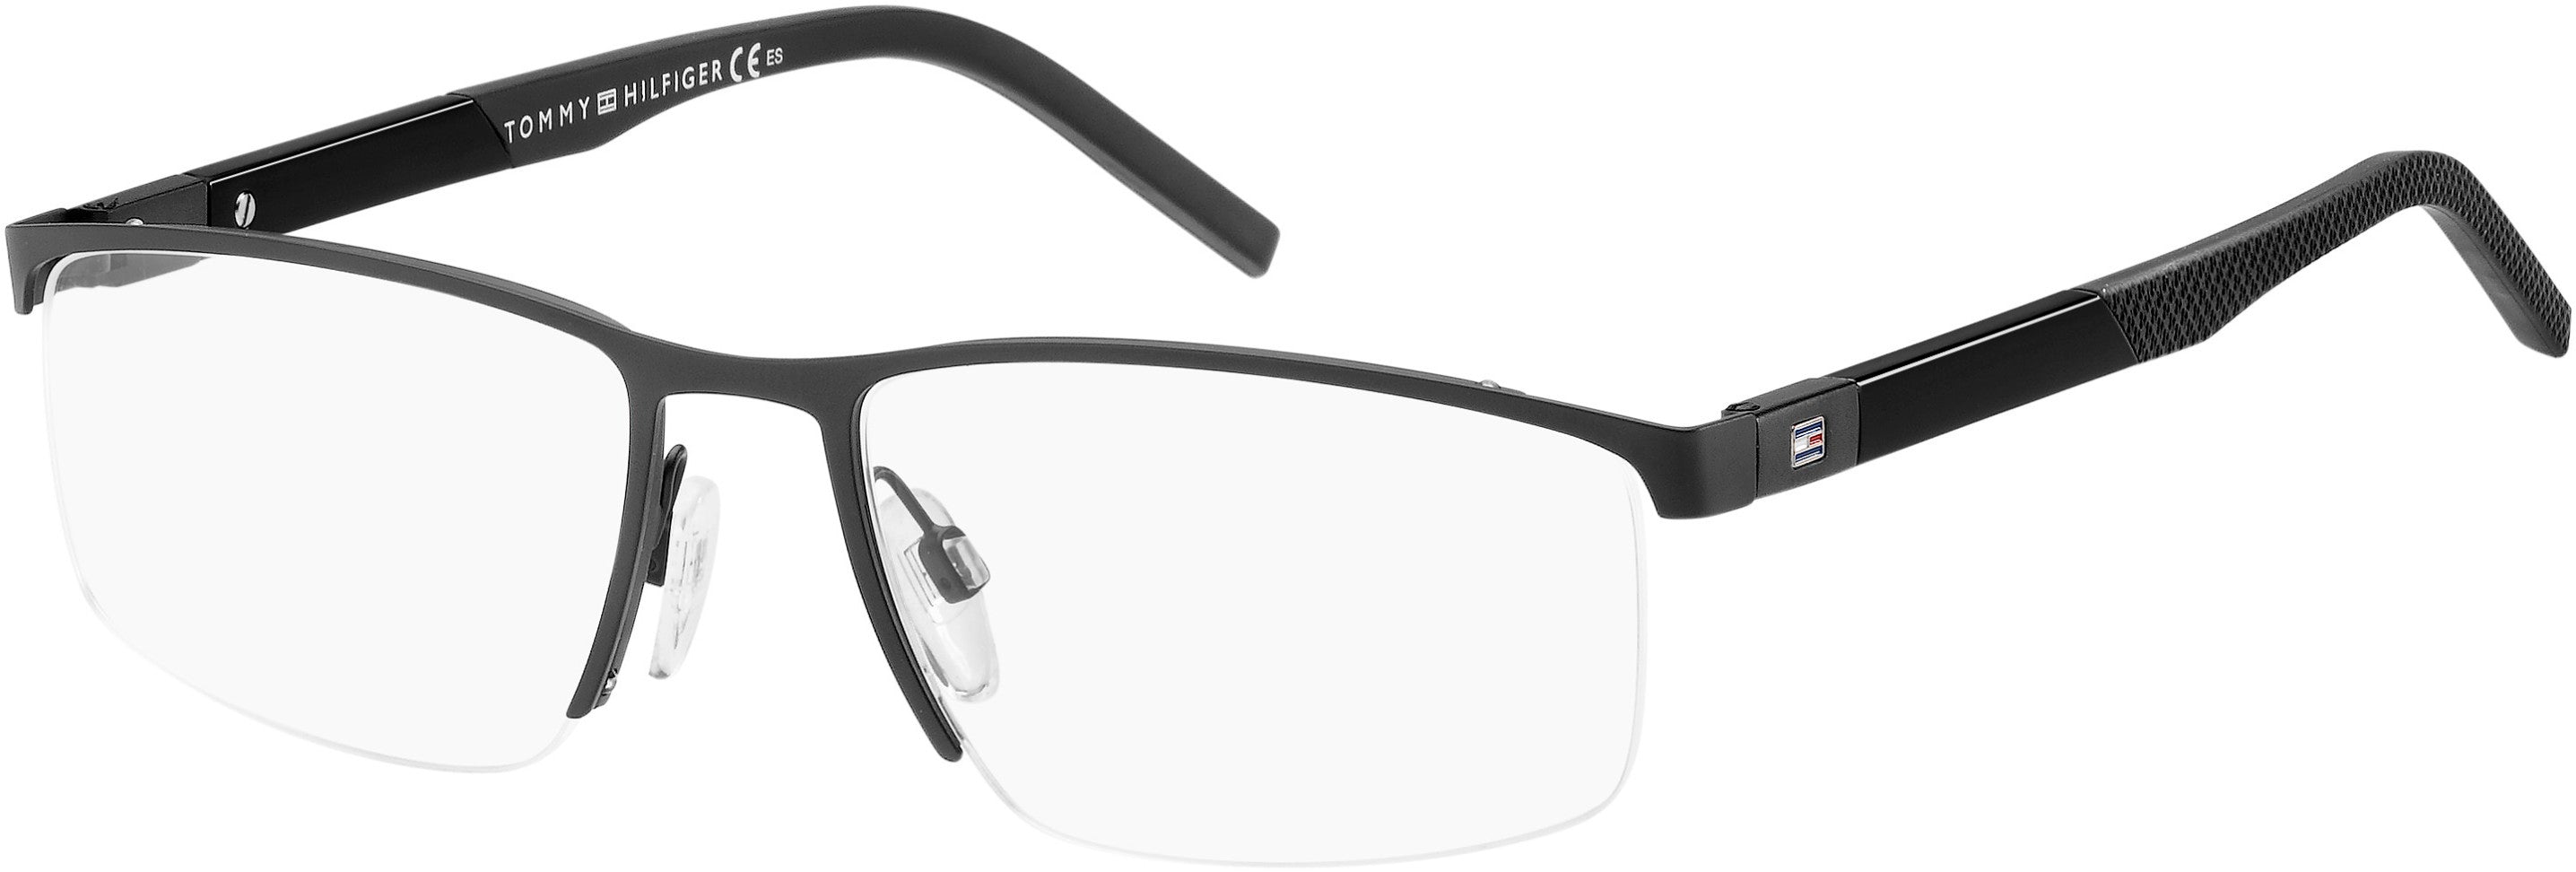 Tommy Hilfiger T. Hilfiger 1640 Rectangular Eyeglasses 0003-0003  Matte Black (00 Demo Lens)